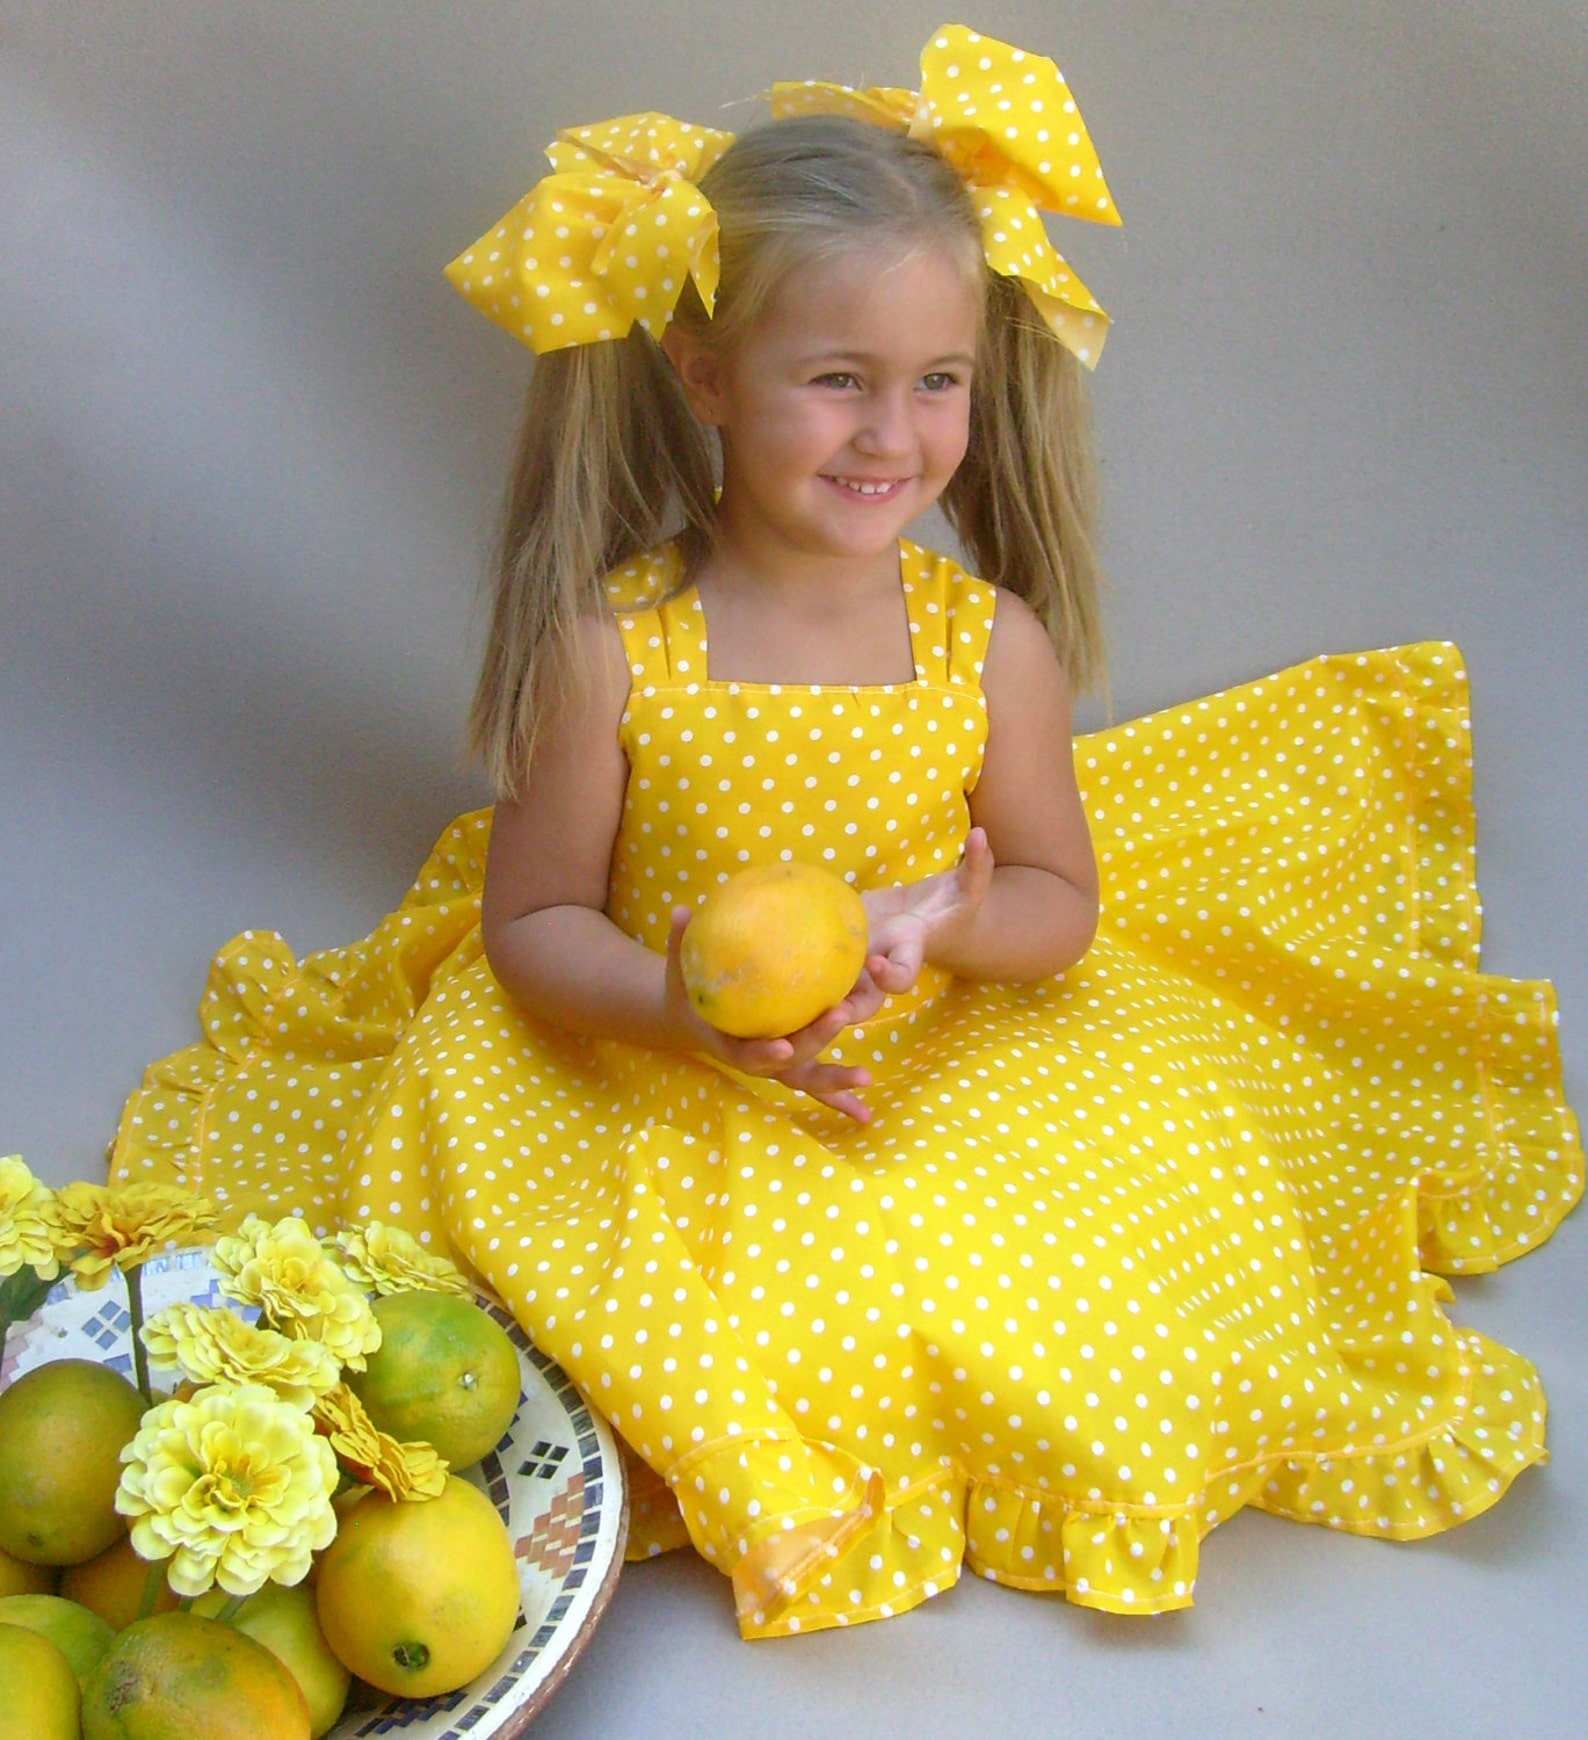 Отгадай загадку нарядные платьица желтые брошки. Желтое платье для девочки. Маленькая девочка в желтом платье. Ребенок в желтом платье. Дквочки в жёлтом платье.